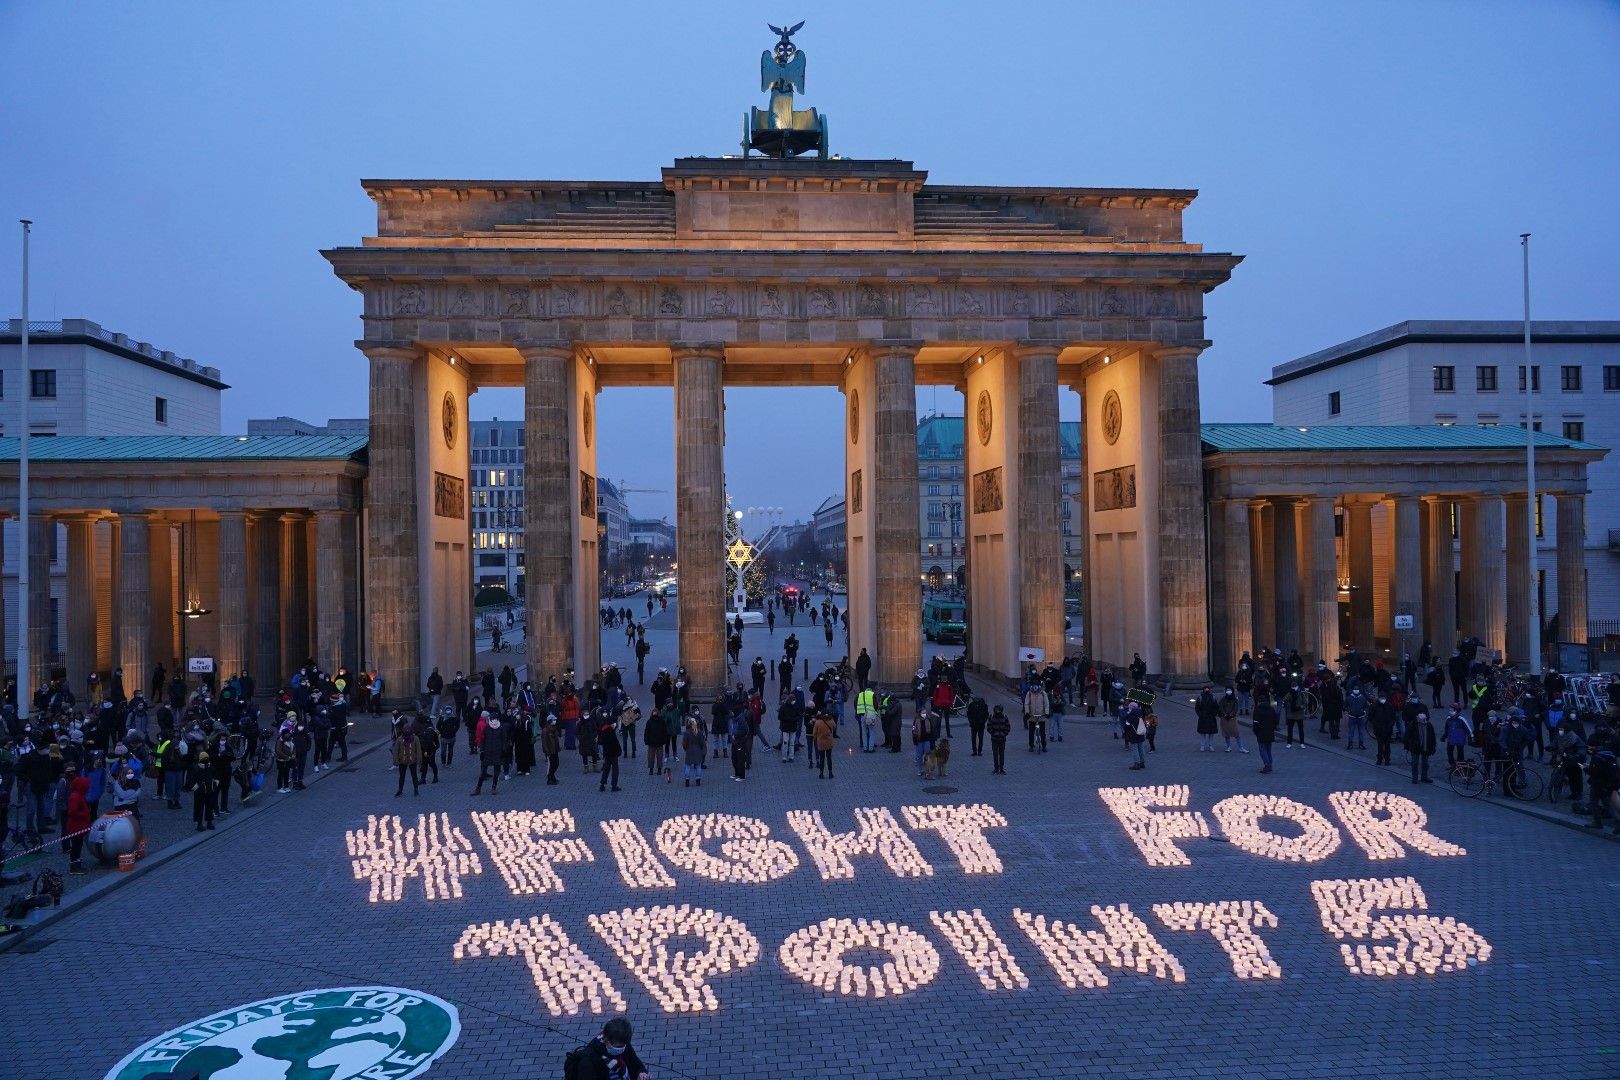 11 декември. В Берлин младежи отбелязаха 5 години от Парижкото споразумение за климата. Със свещи пред Бранденбургската врата младите хора изписаха "Борете се за 1.5", като се има предвид договорената цел да се удържи повишаването на температурата до 1.5°